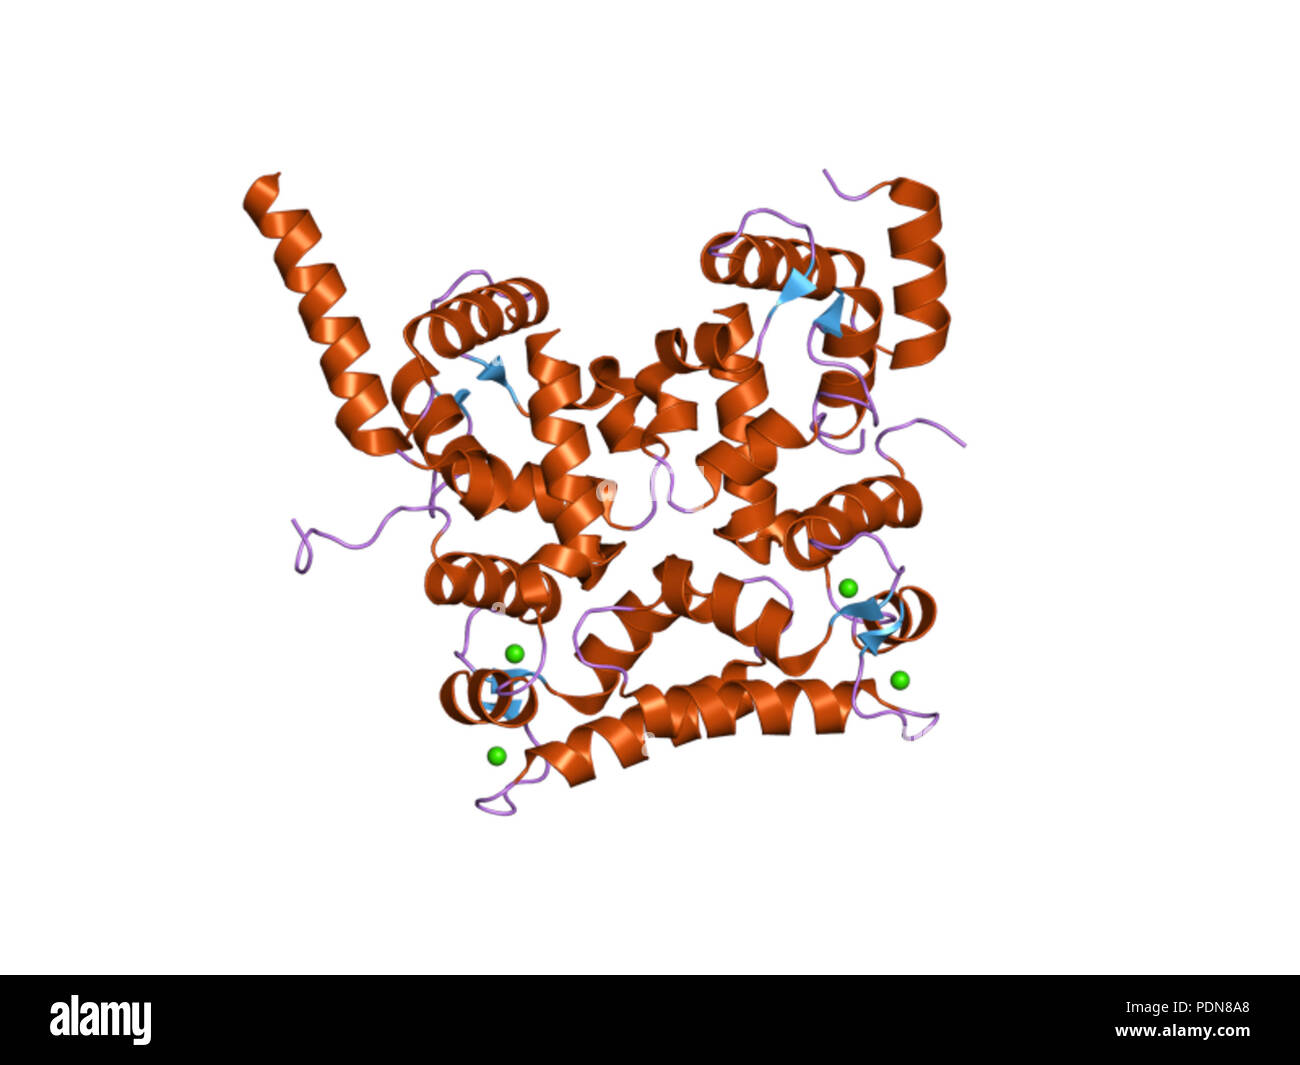 Белок том 1. Гомологичные белки. Белки с гомологичными последовательностями аминокислот. Мультяшные картинки структуры протеина. Кальцинейрин.